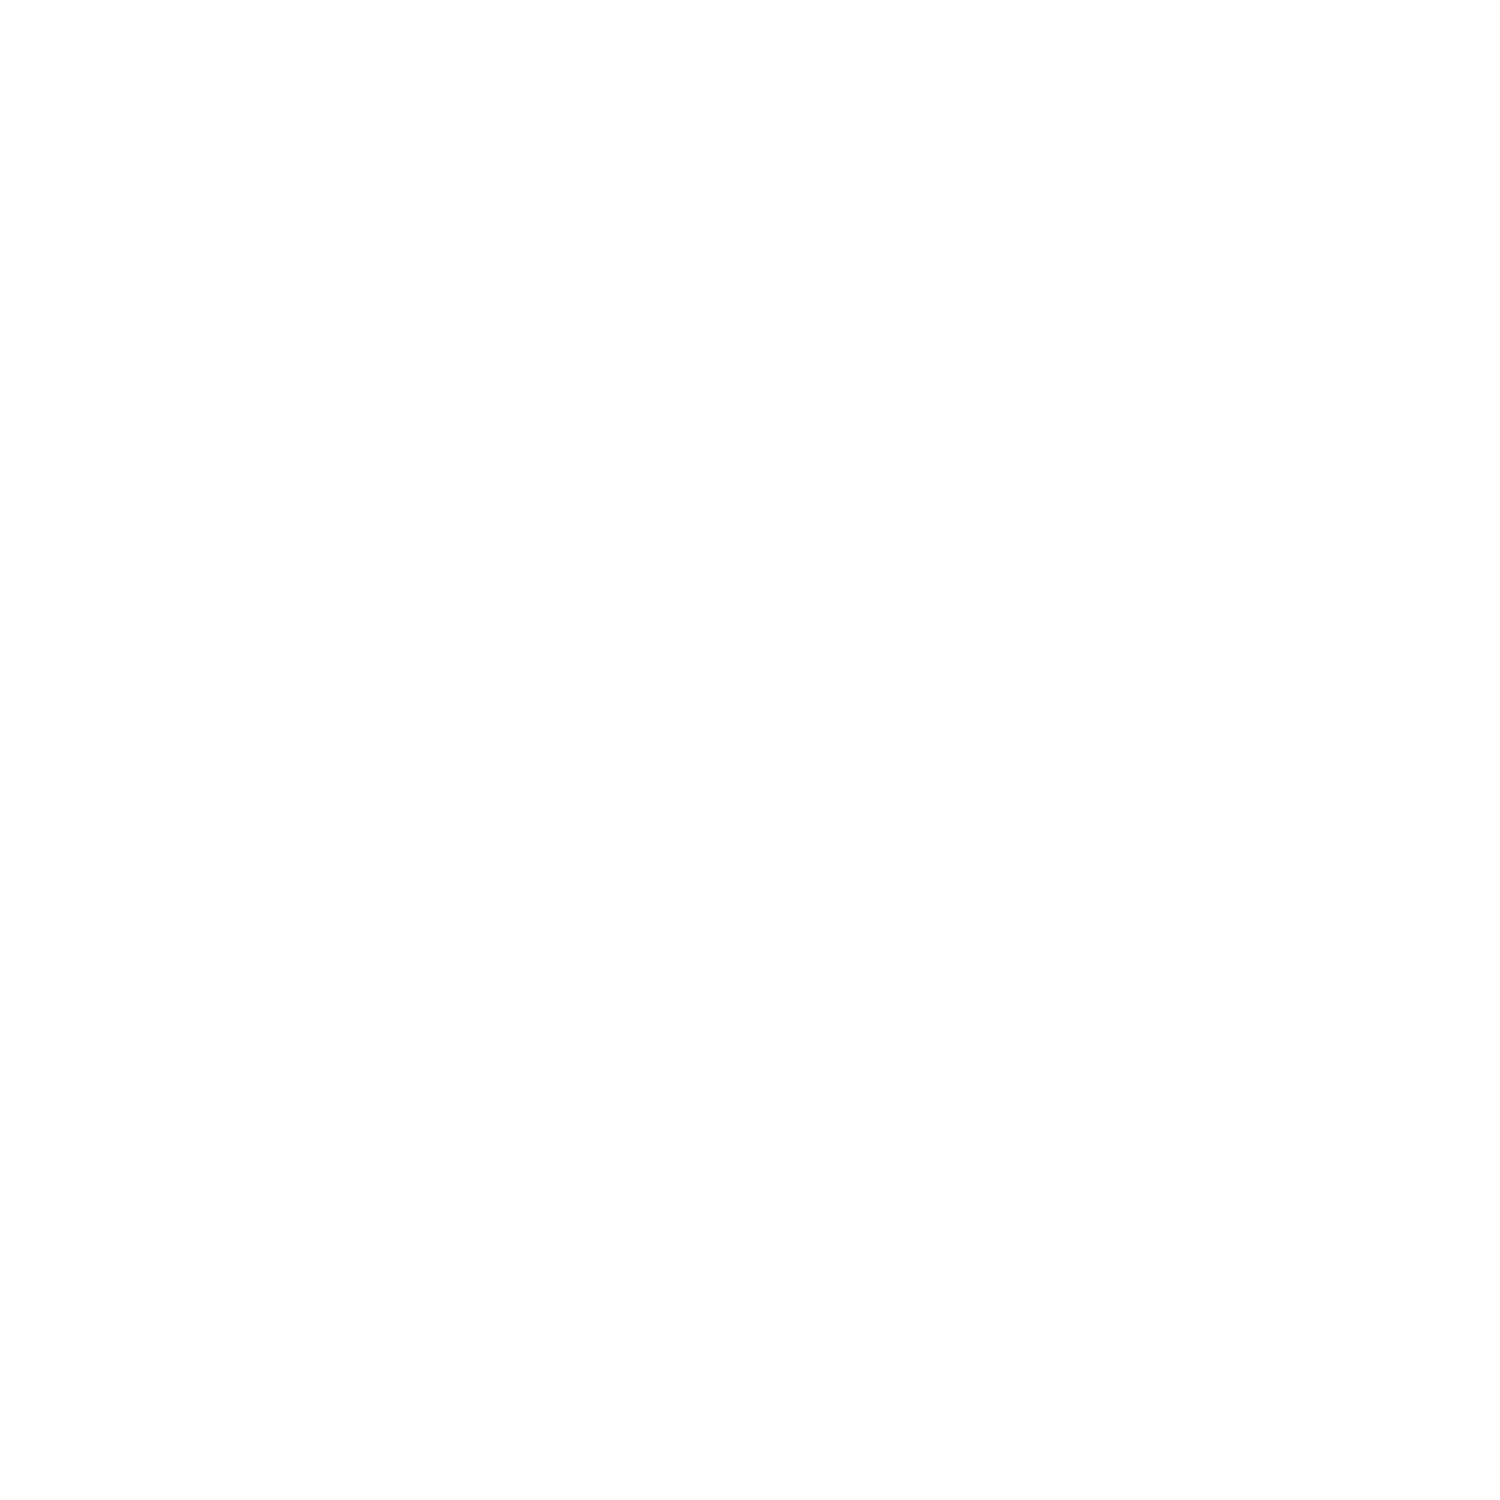 Corina Ignat